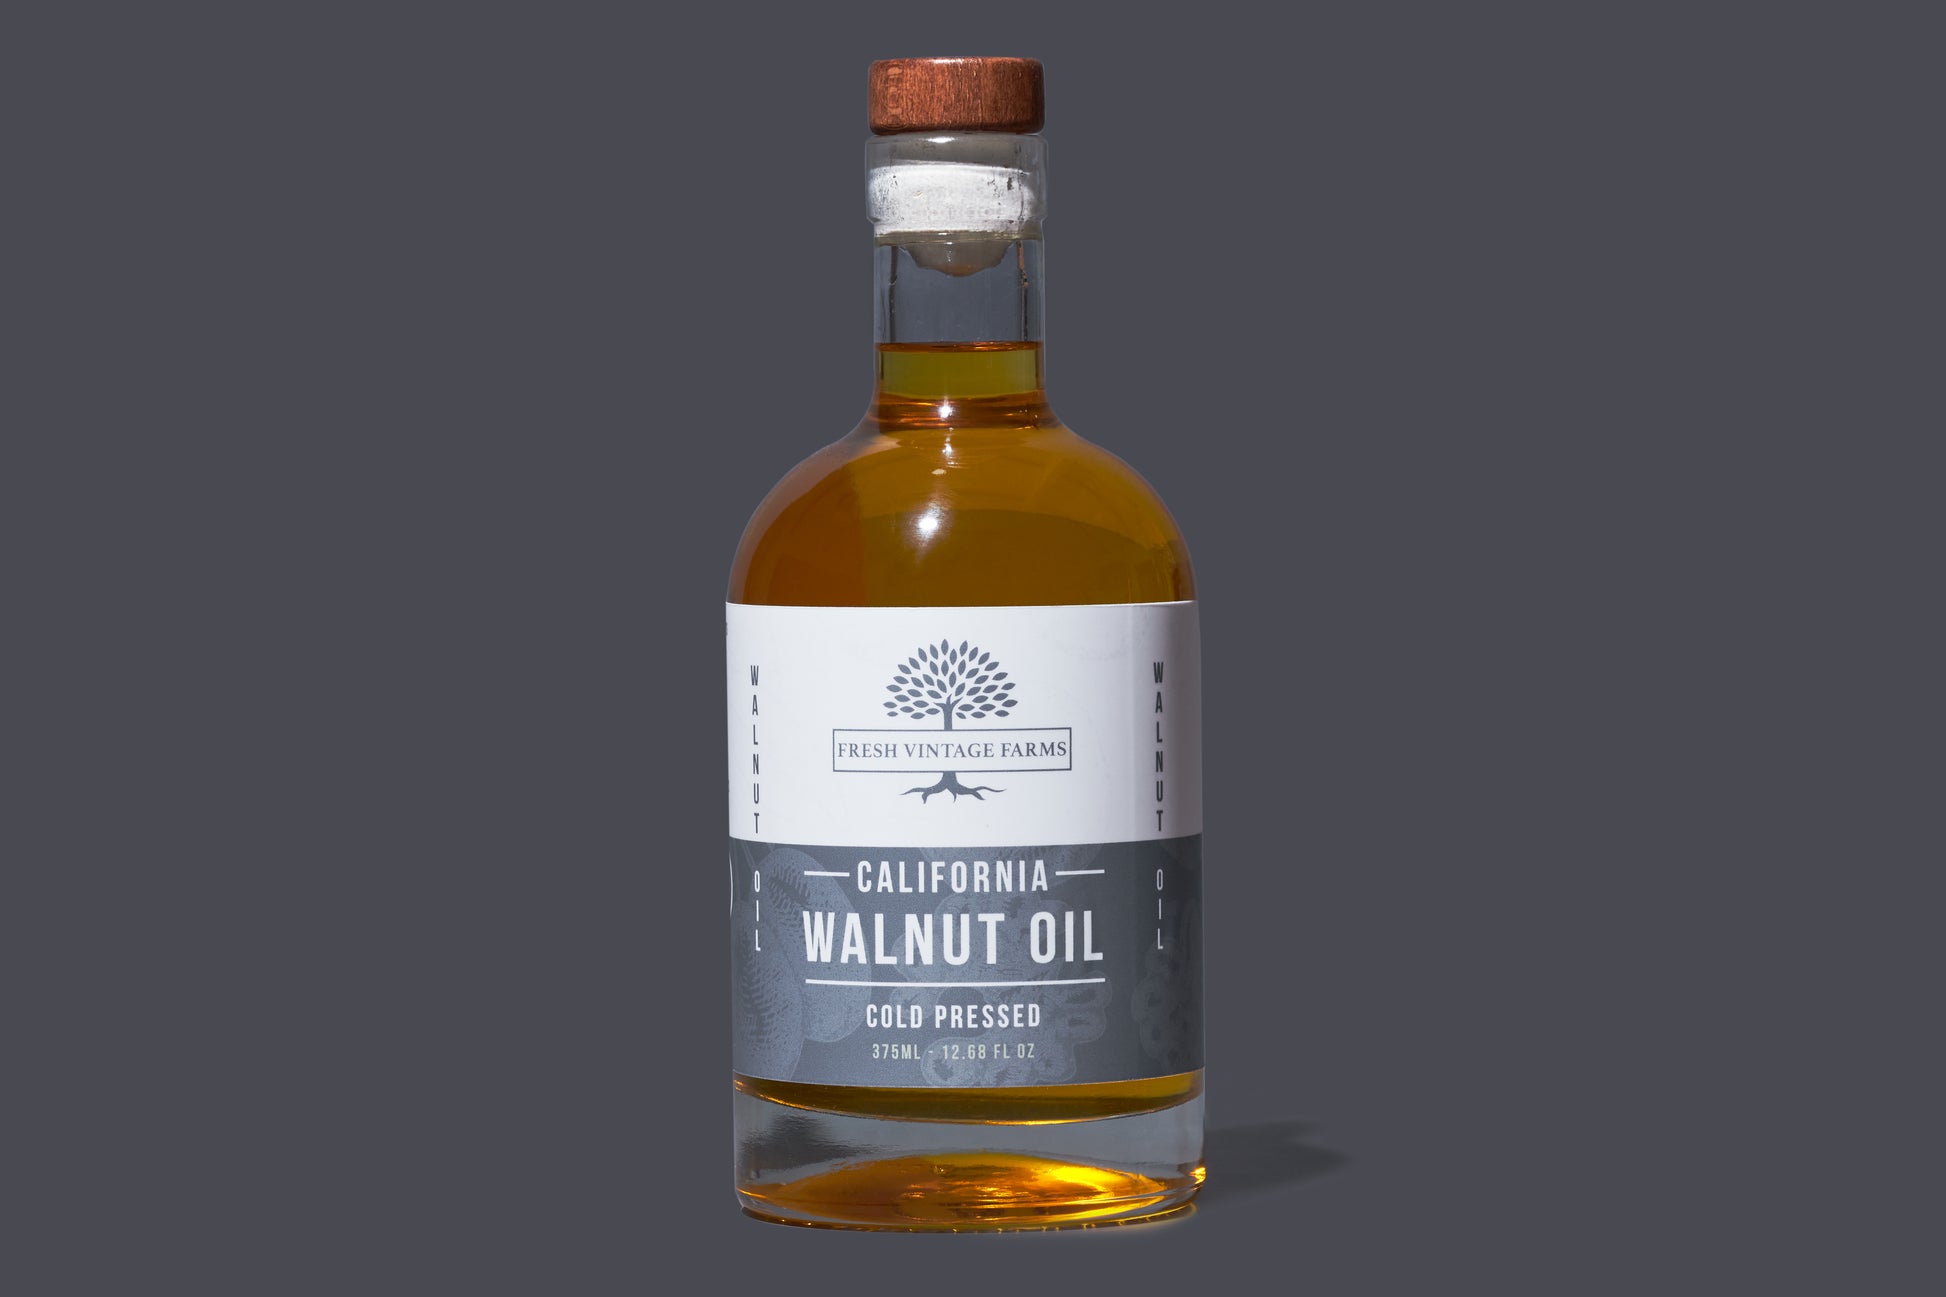 Bulk Refined Walnut Oil - Caloy - Quality Nut Oils